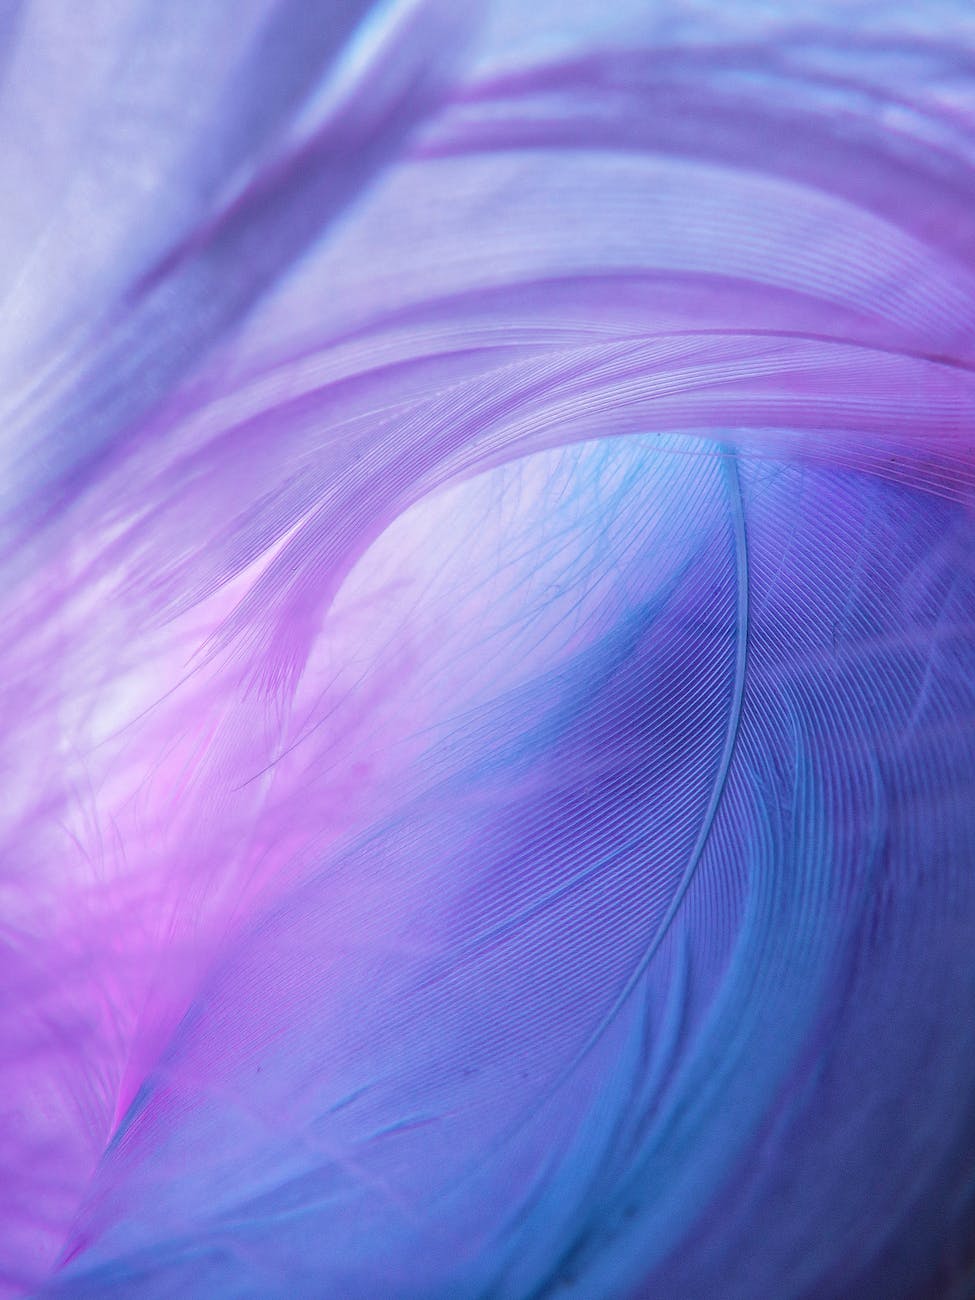 Purple feather decorative image.